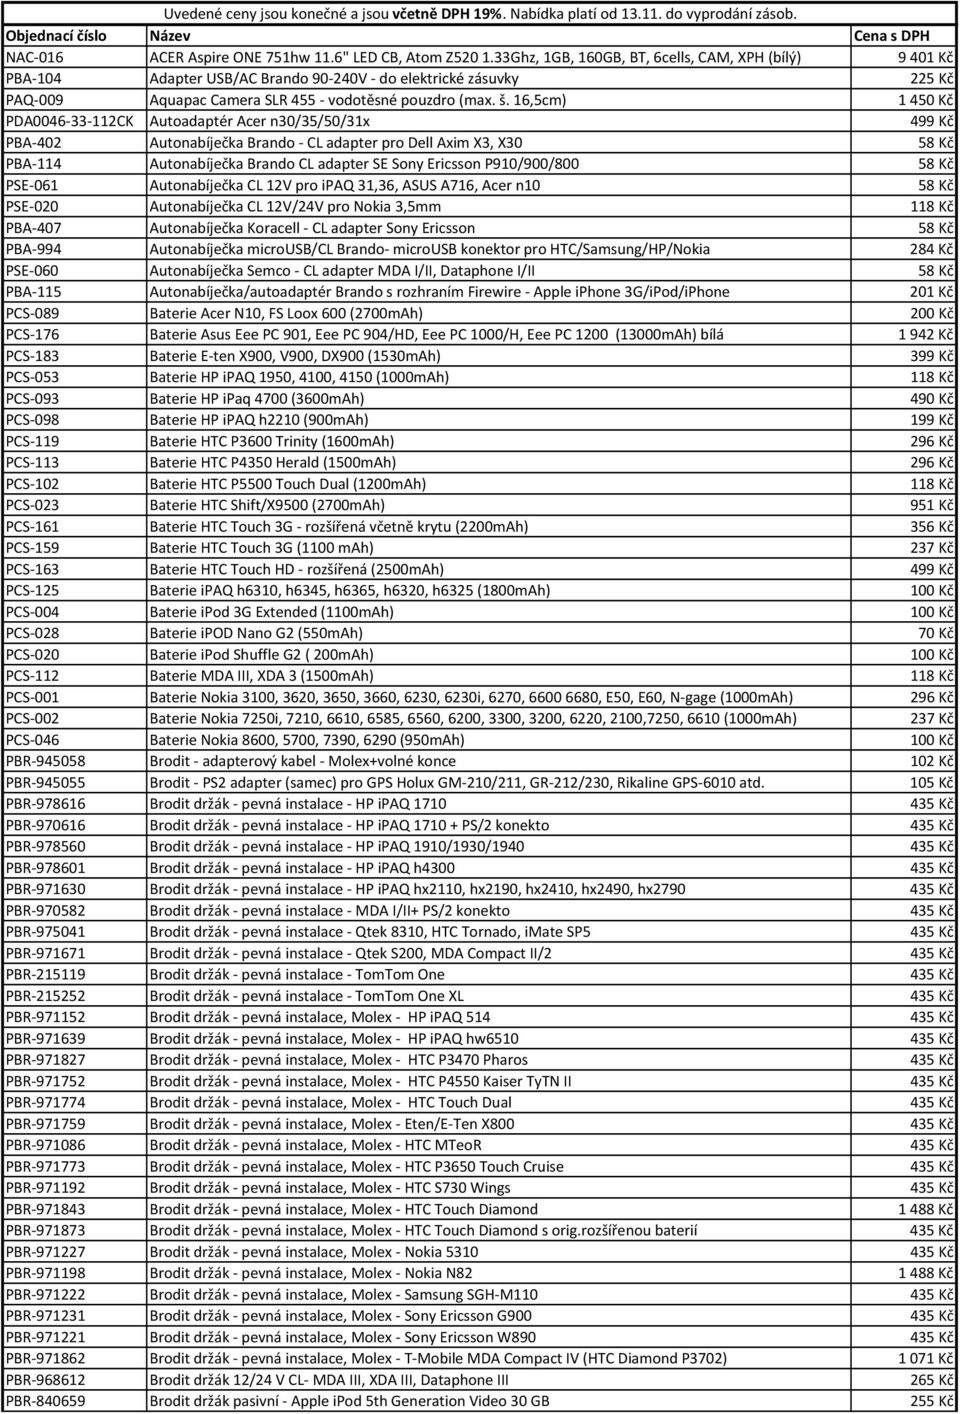 16,5cm) 1450 Kč PDA0046-33-112CK Autoadaptér Acer n30/35/50/31x 499 Kč PBA-402 Autonabíječka Brando - CL adapter pro Dell Axim X3, X30 58 Kč PBA-114 Autonabíječka Brando CL adapter SE Sony Ericsson